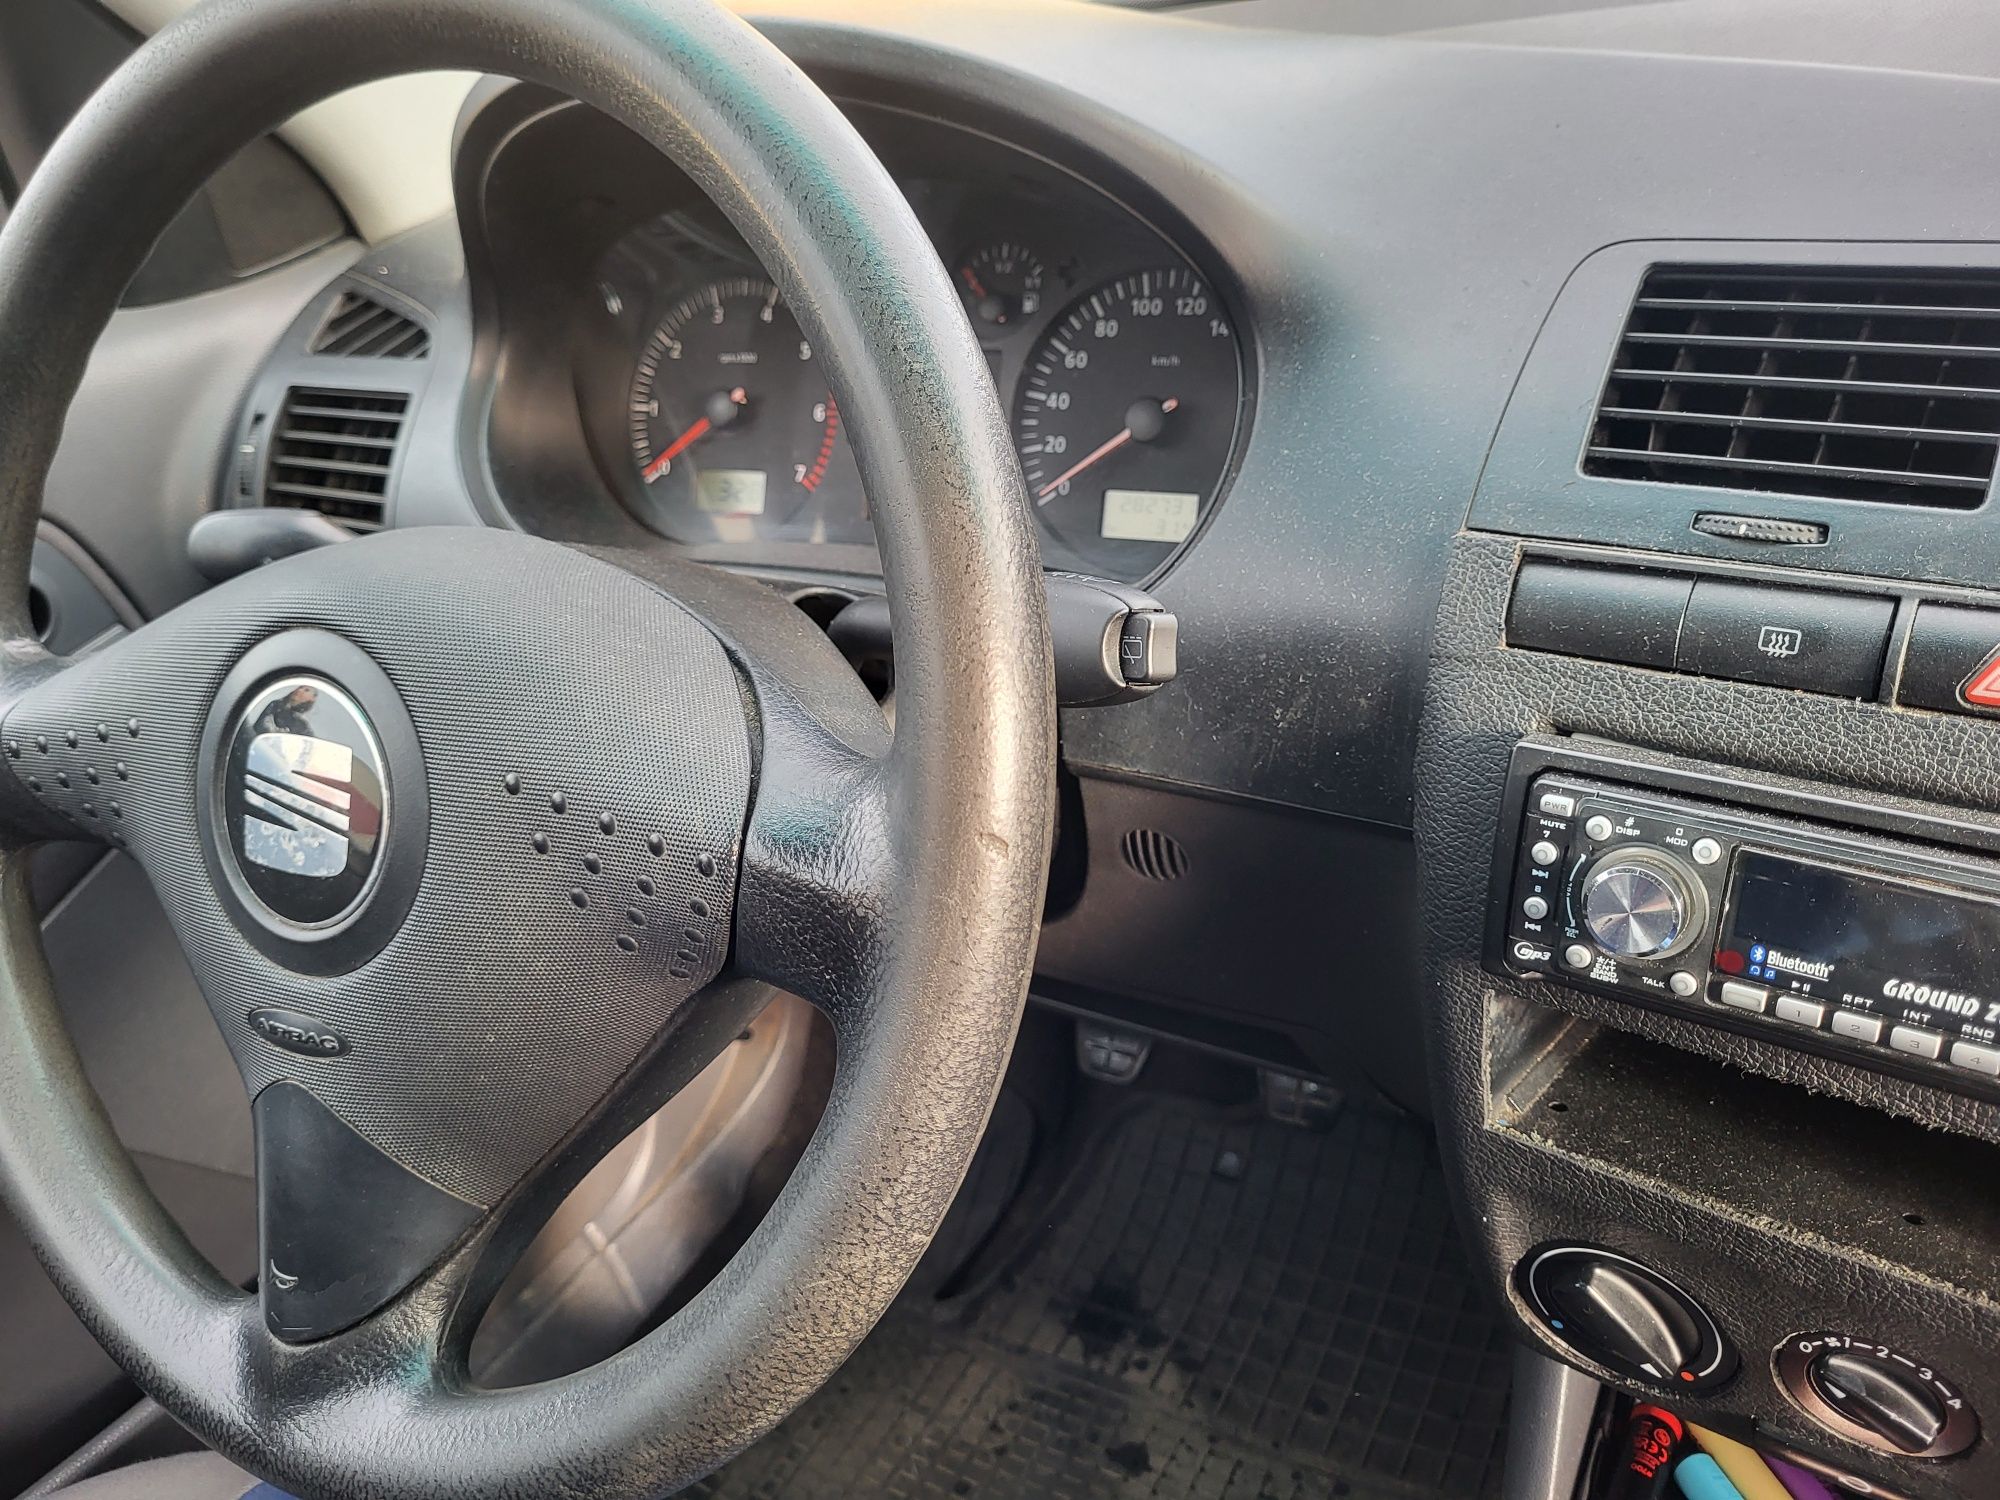 seat Ibiza 1.4 MPI benzyna